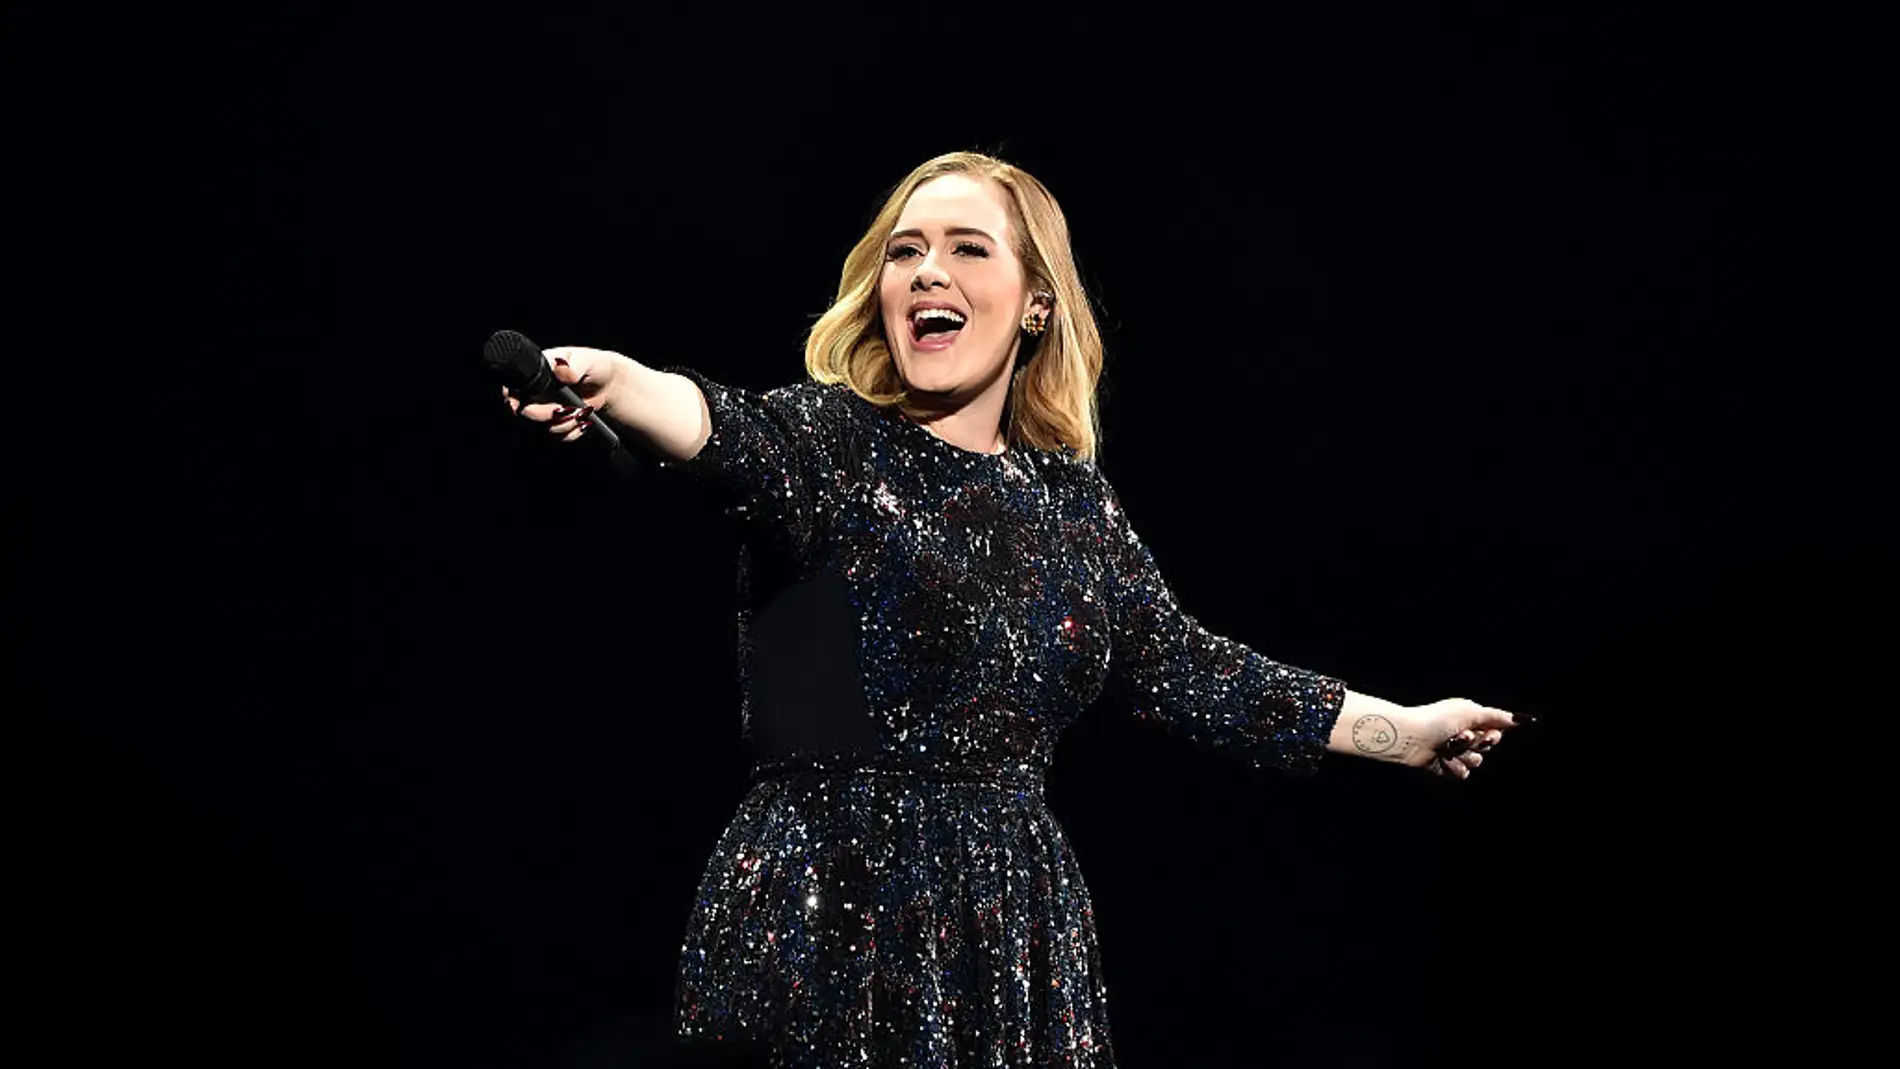 Adele participa una propuesta de matrimonio sorpresa durante su concierto 'One Night Only'